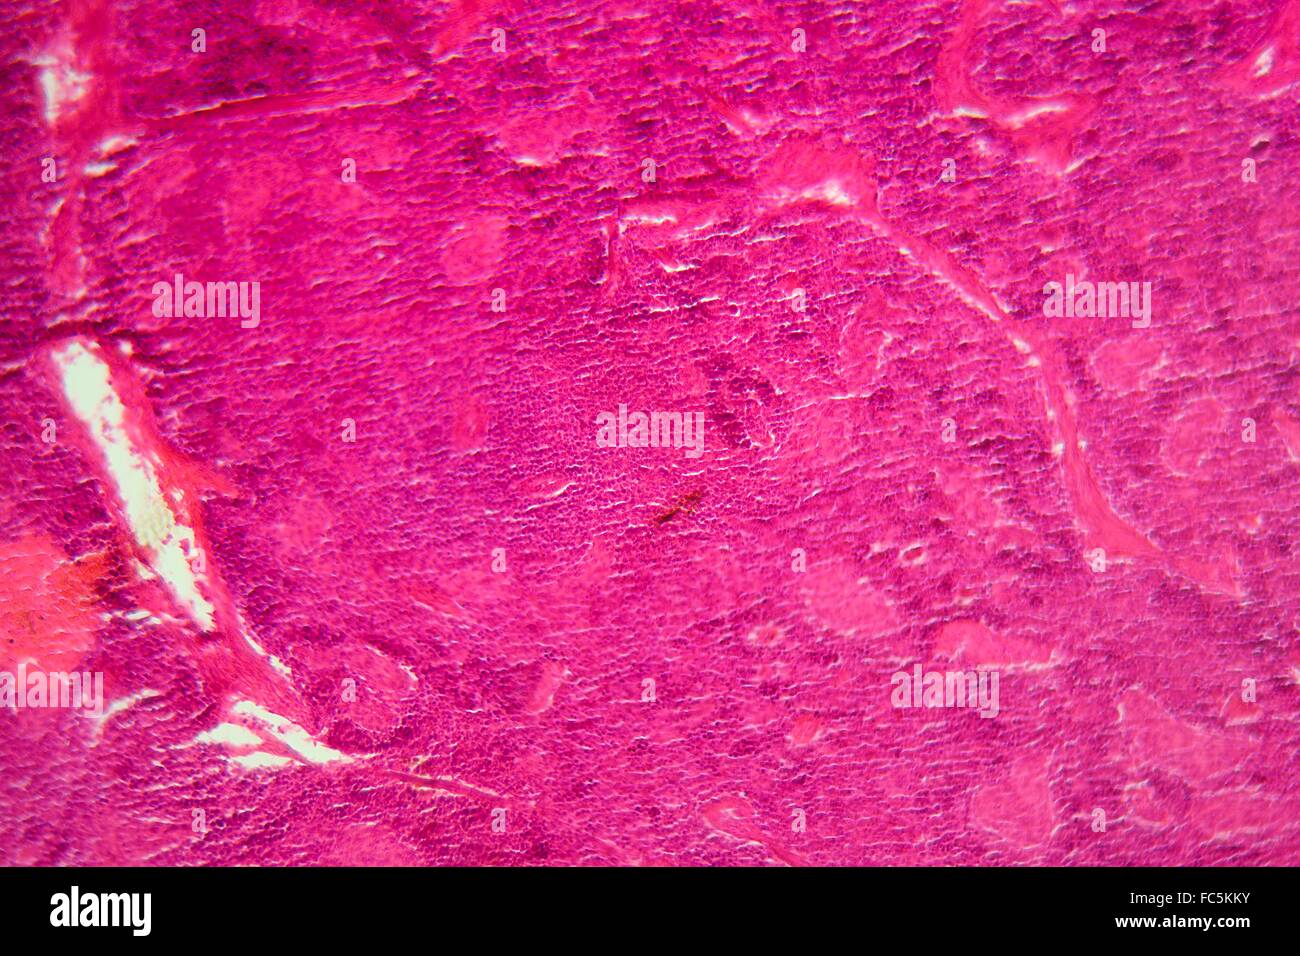 Pankreas-Gewebe unter dem Mikroskop Stockfotografie - Alamy